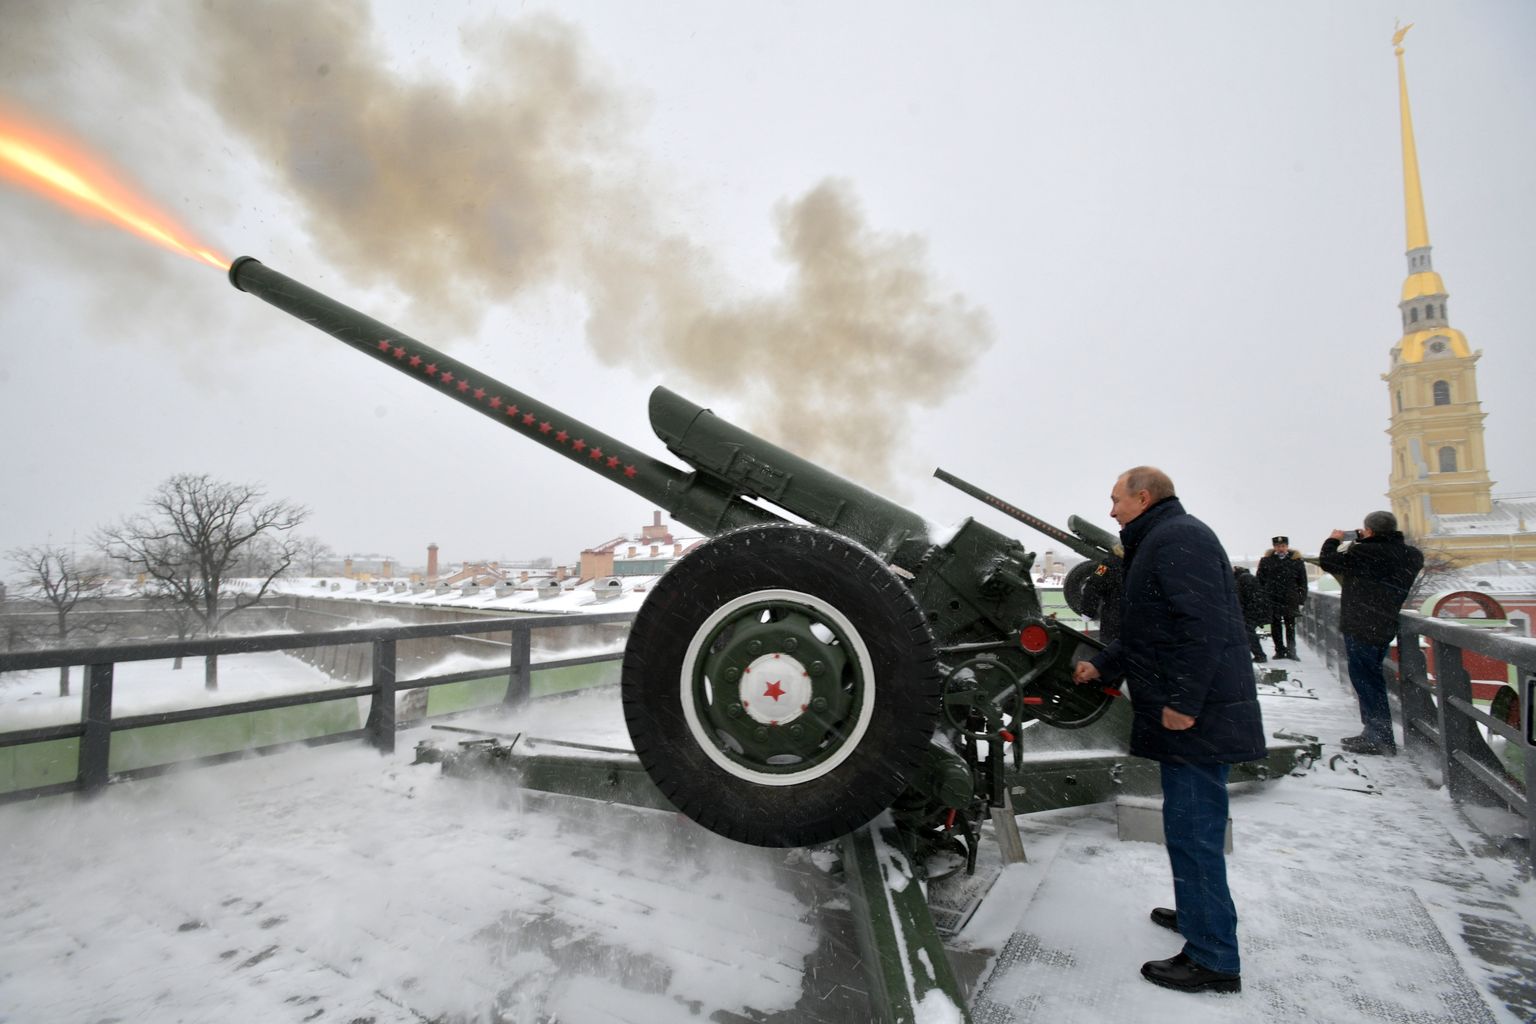 Venemaa president Vladimir Putin tulistamas 7. jaanuaril 2019 Peterburis Peeter-Pauli kindluses suurtükist